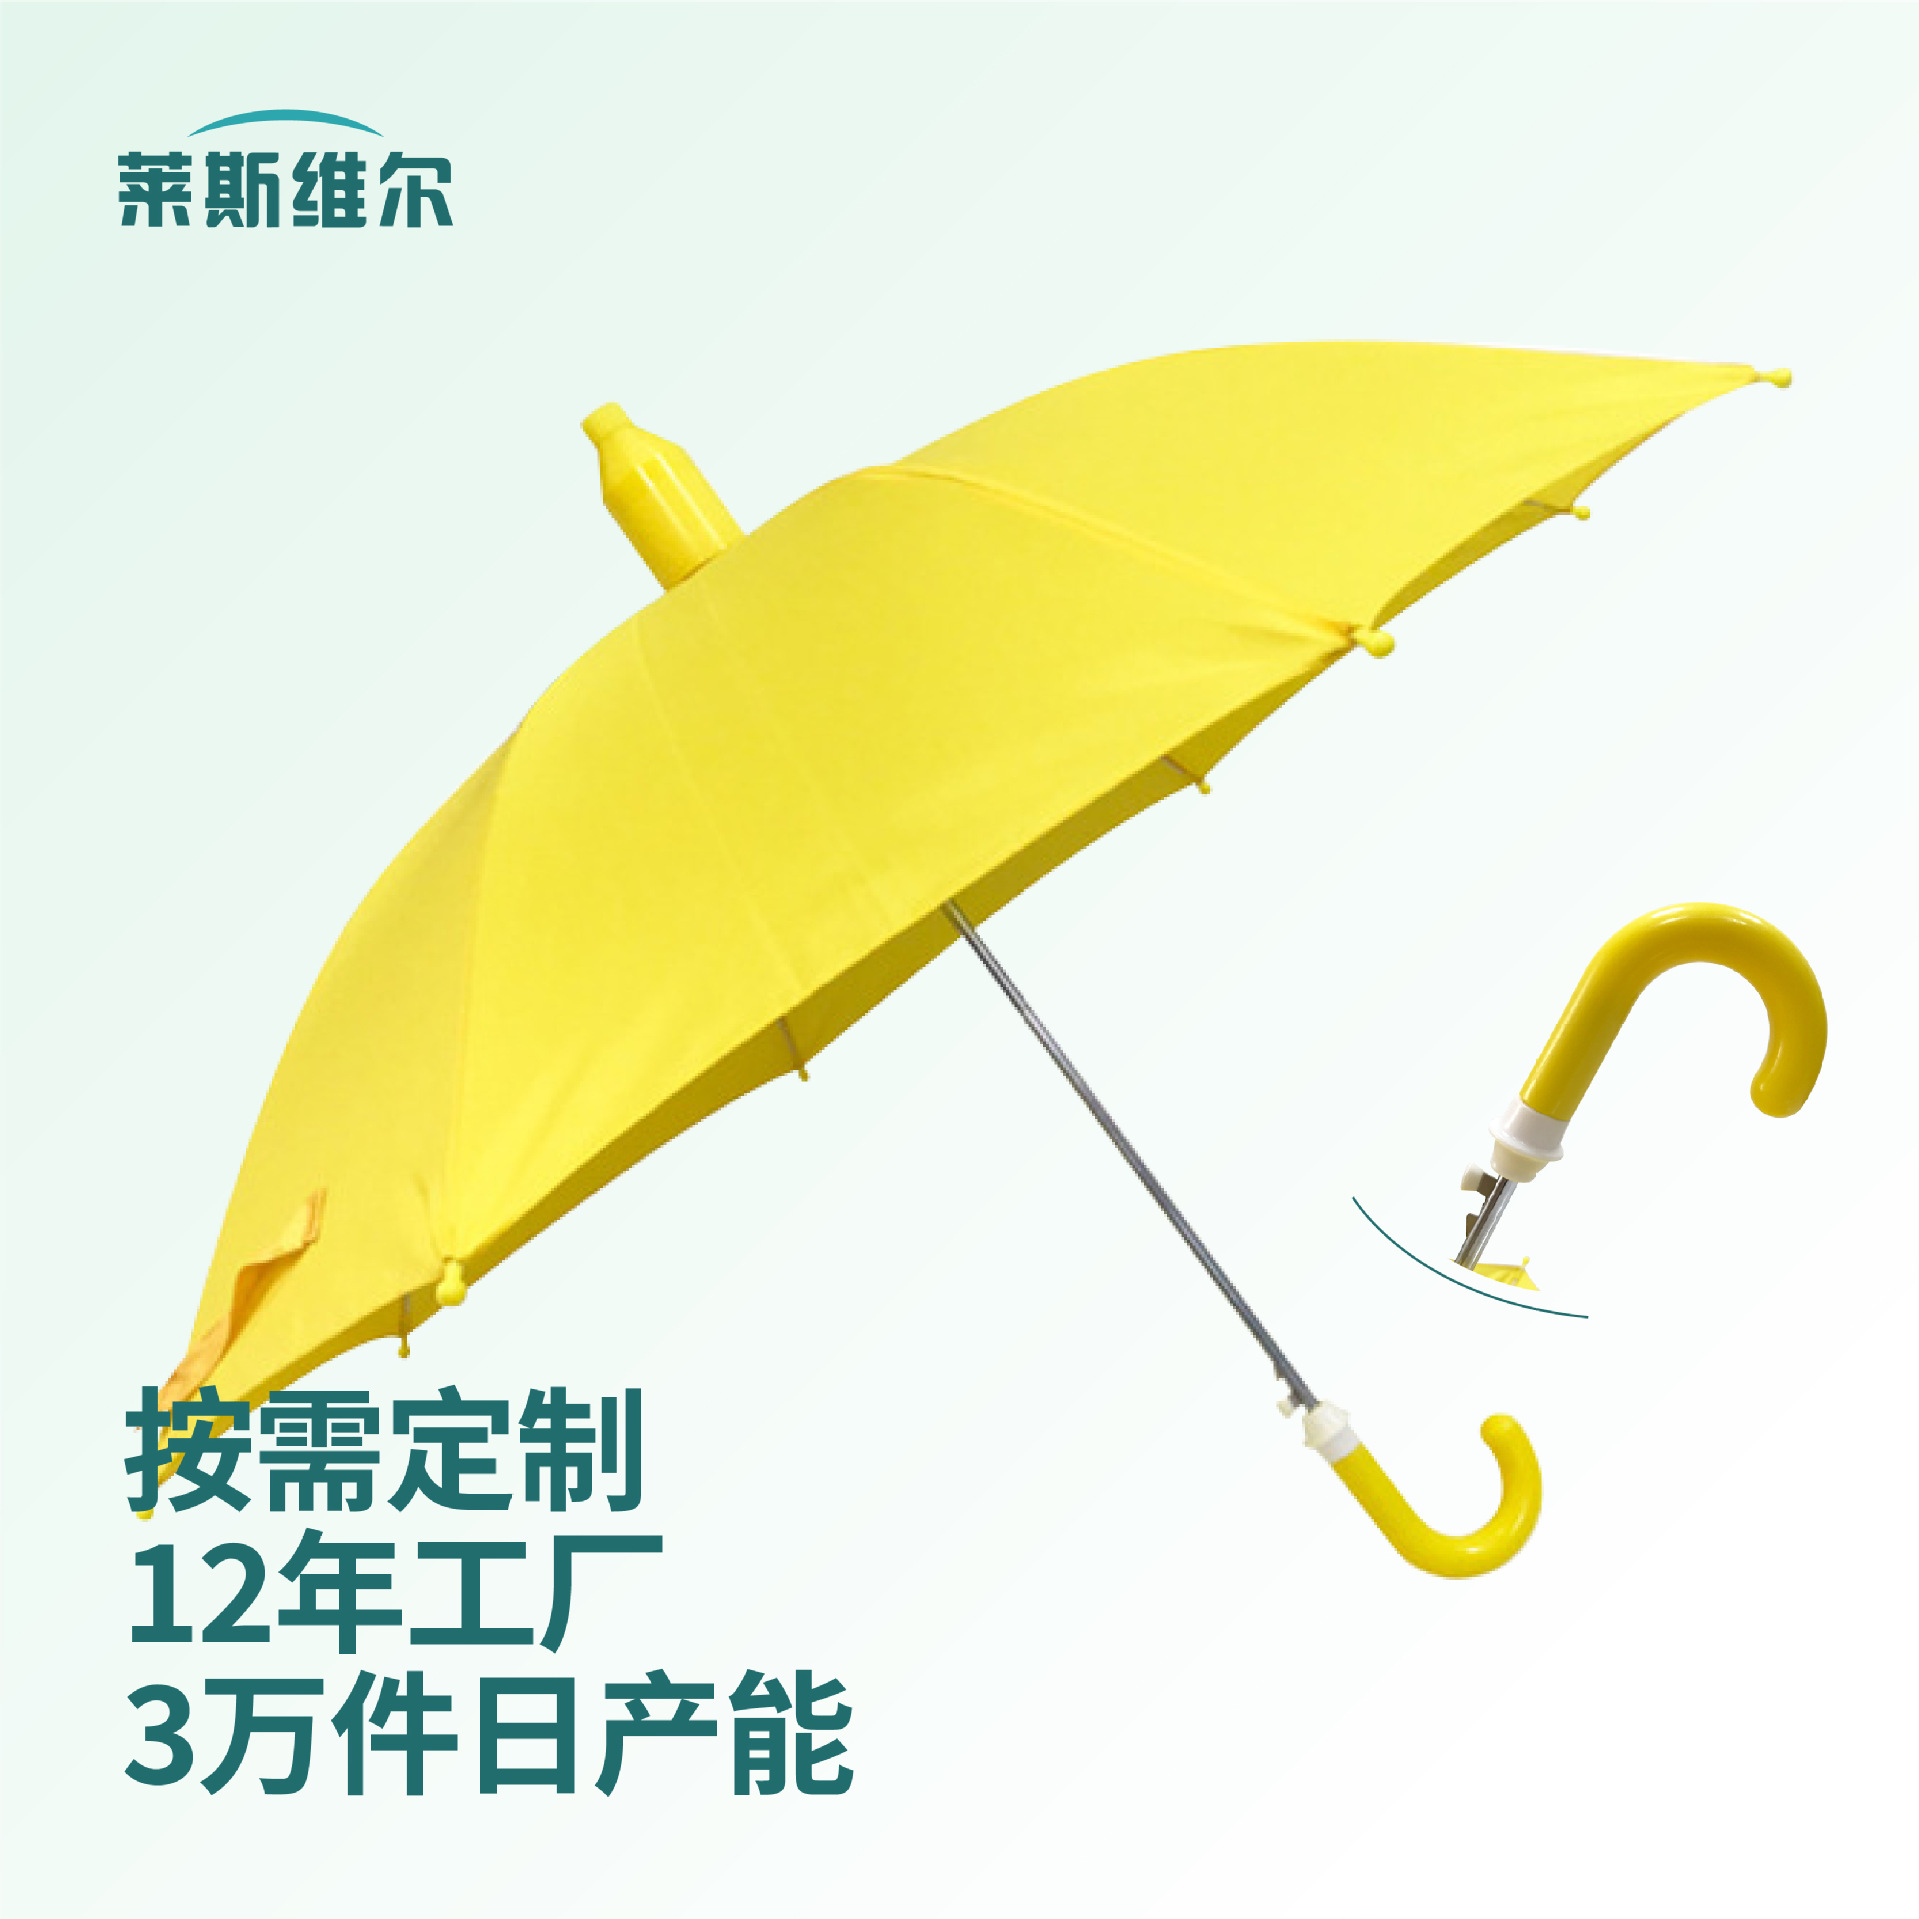 防水套8骨儿童雨伞批发可定制图案logo晴雨两用长柄直杆儿童雨伞